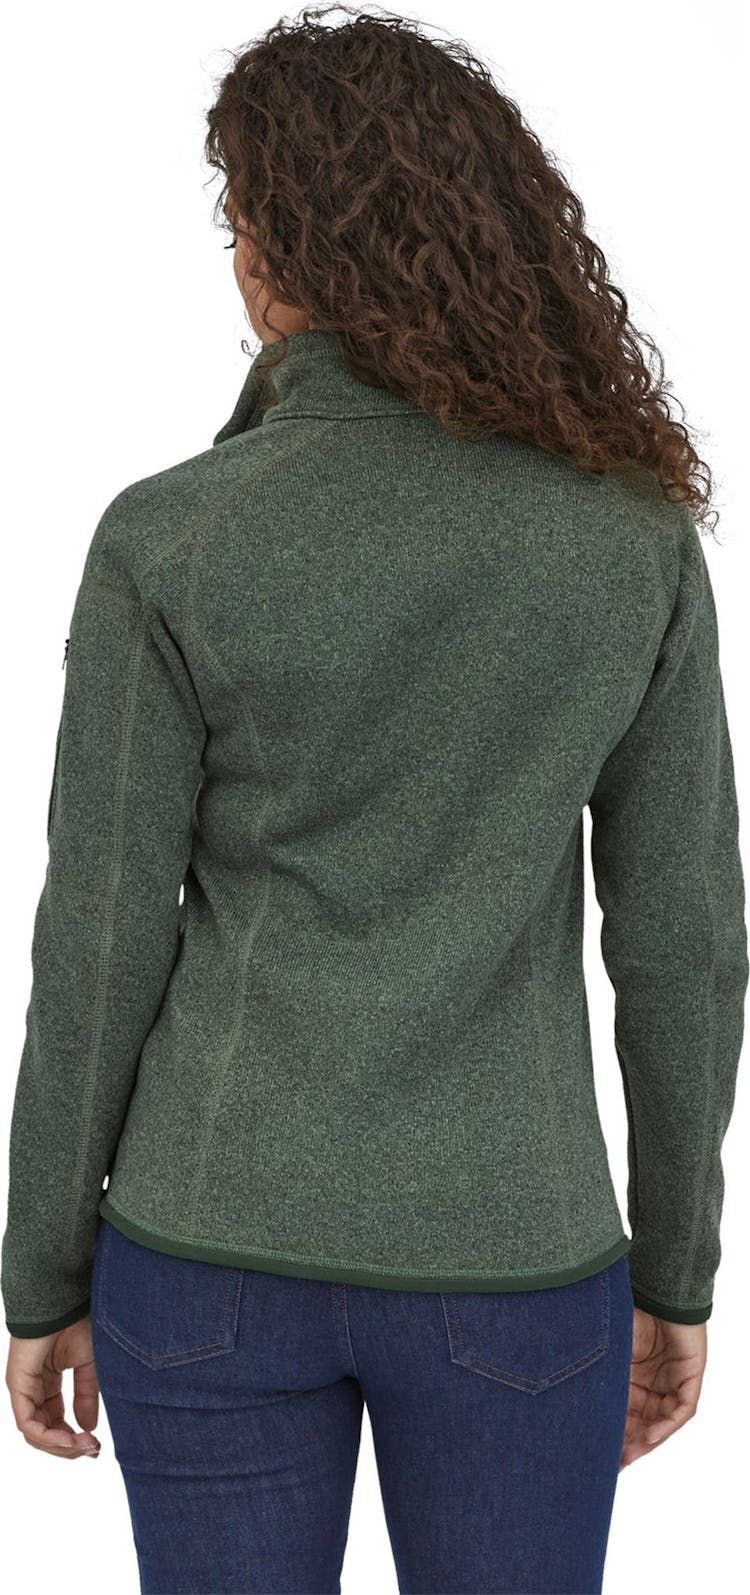 Numéro de l'image de la galerie de produits 2 pour le produit Chandail en molleton à glissière 1/4 Better Sweater - Femme